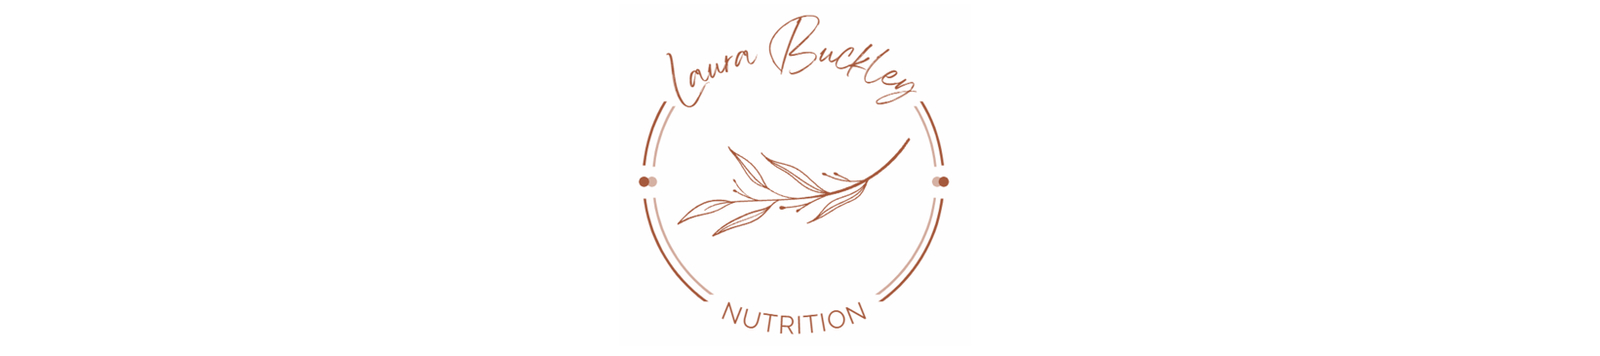 Laura Buckley Nutrition